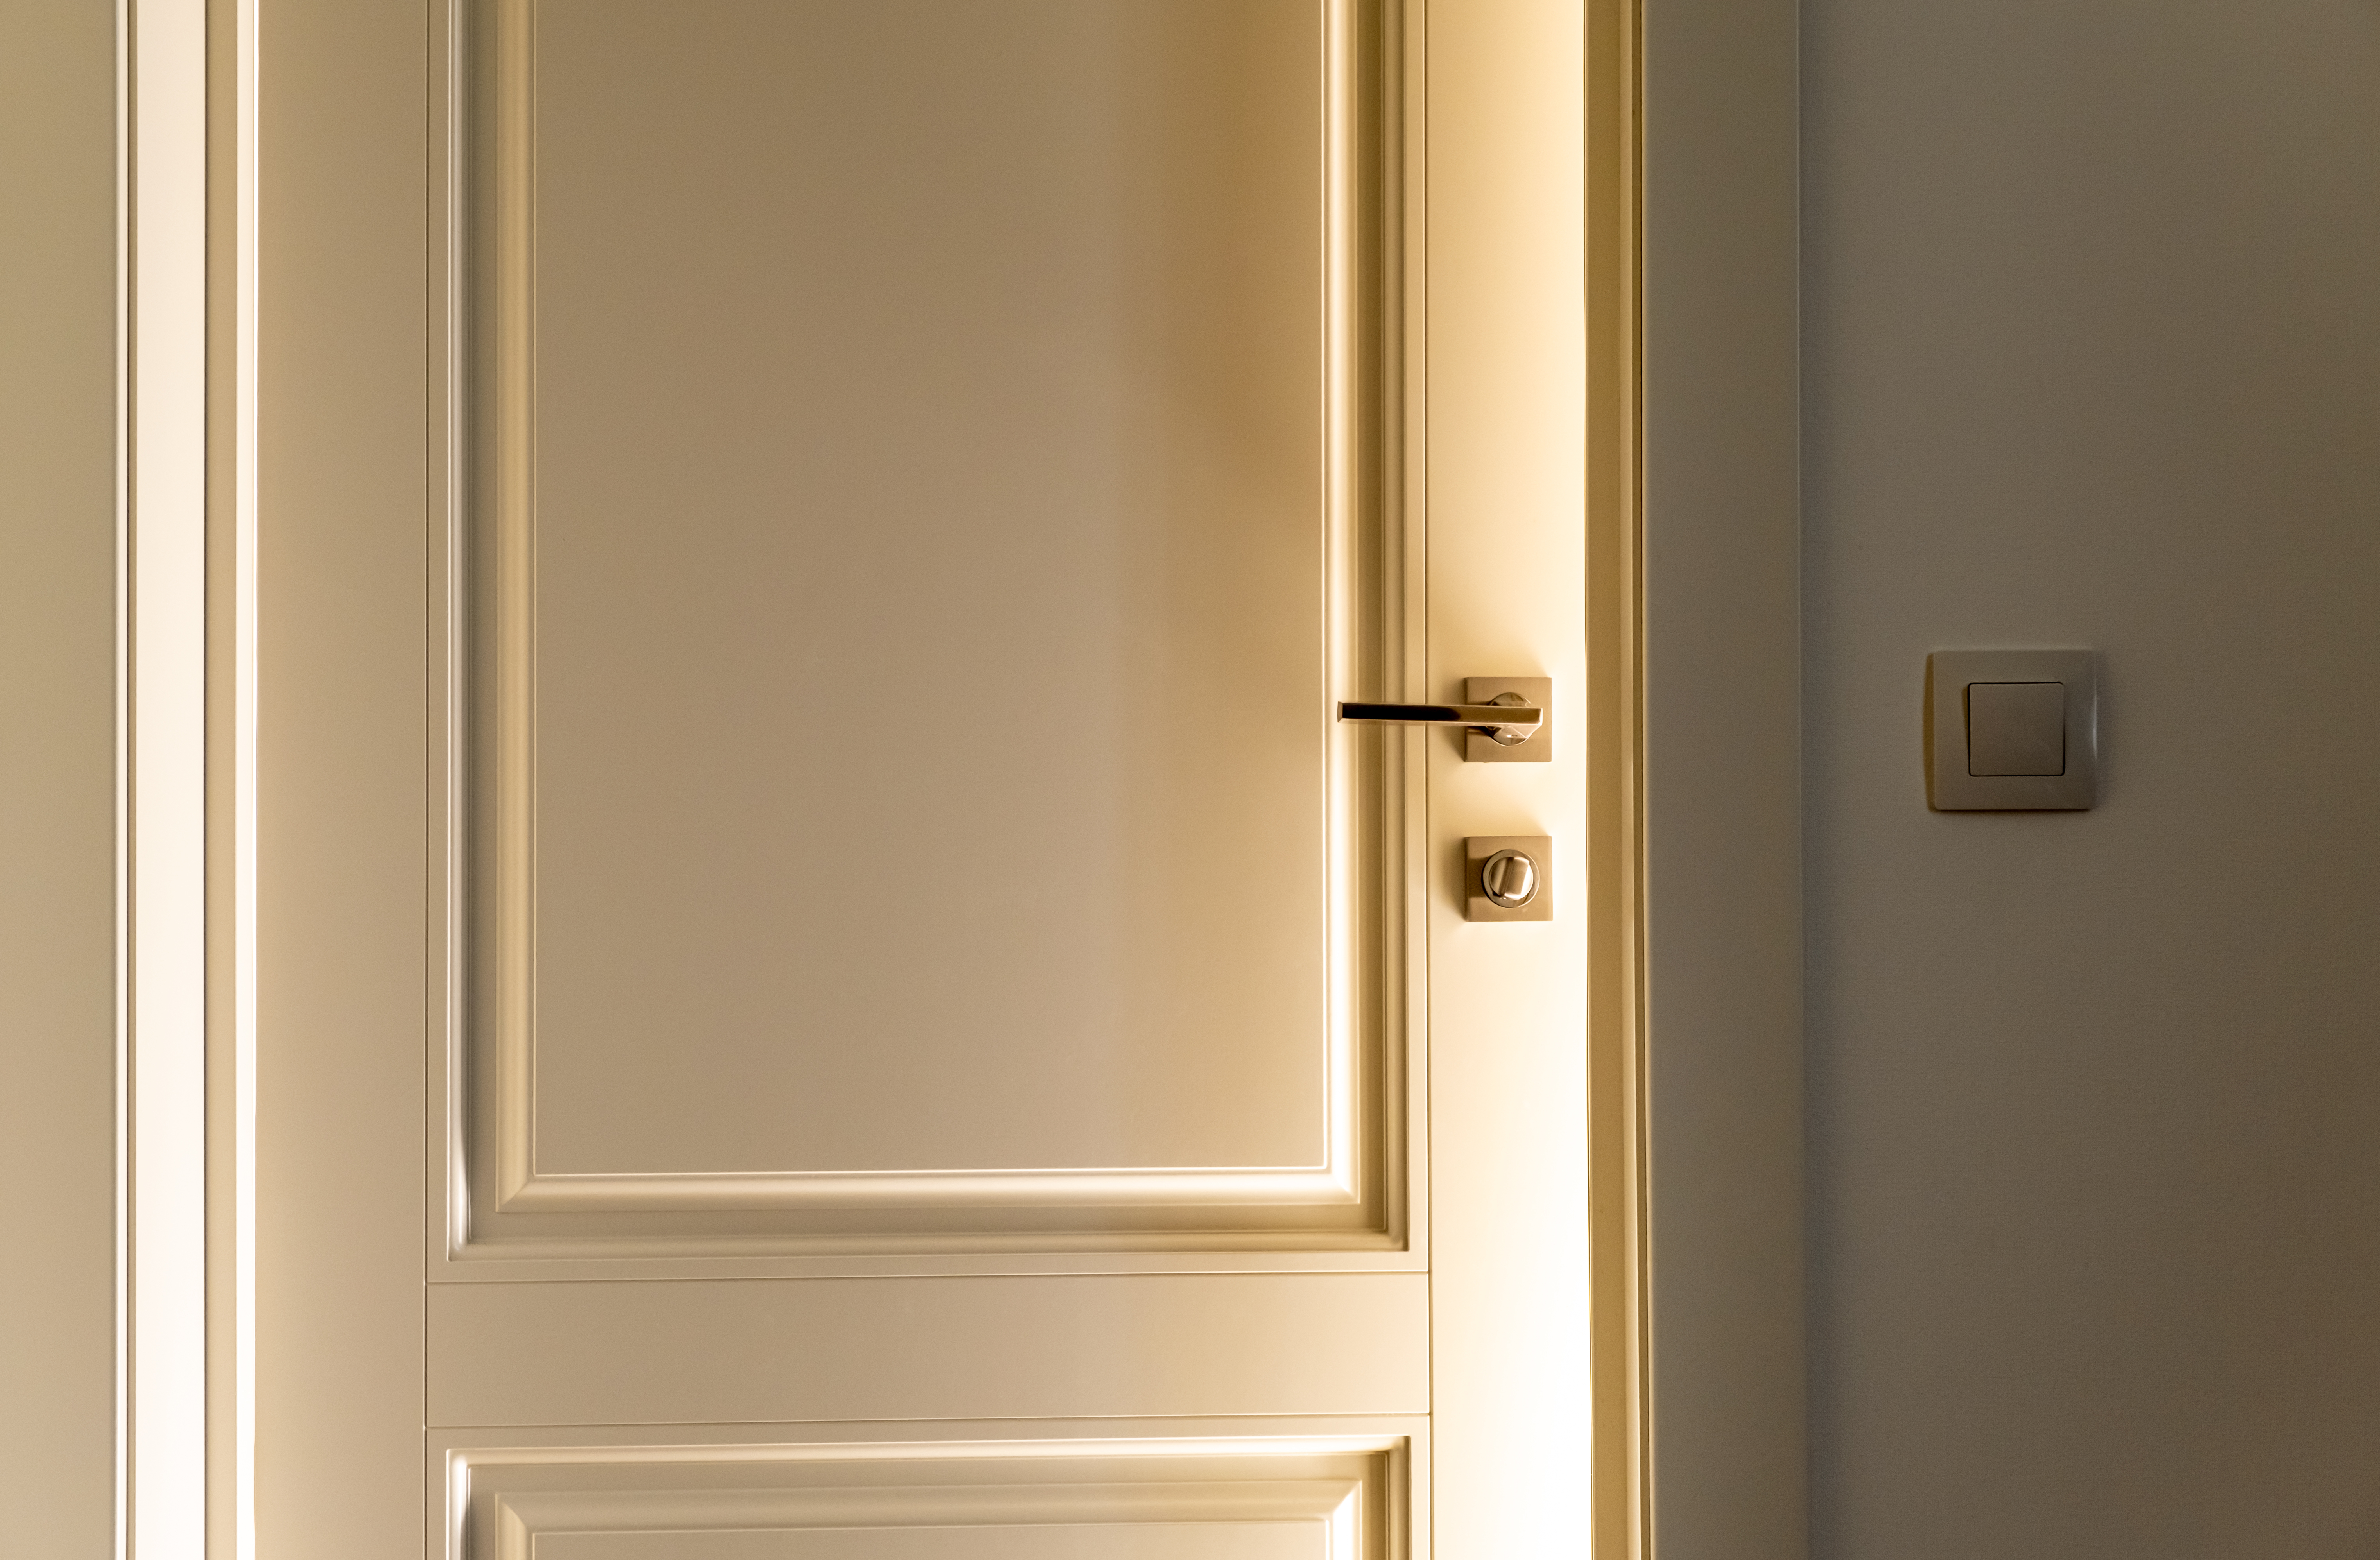 Rayos de luz brillante entran por una rendija de la puerta. | Fuente: Shutterstock